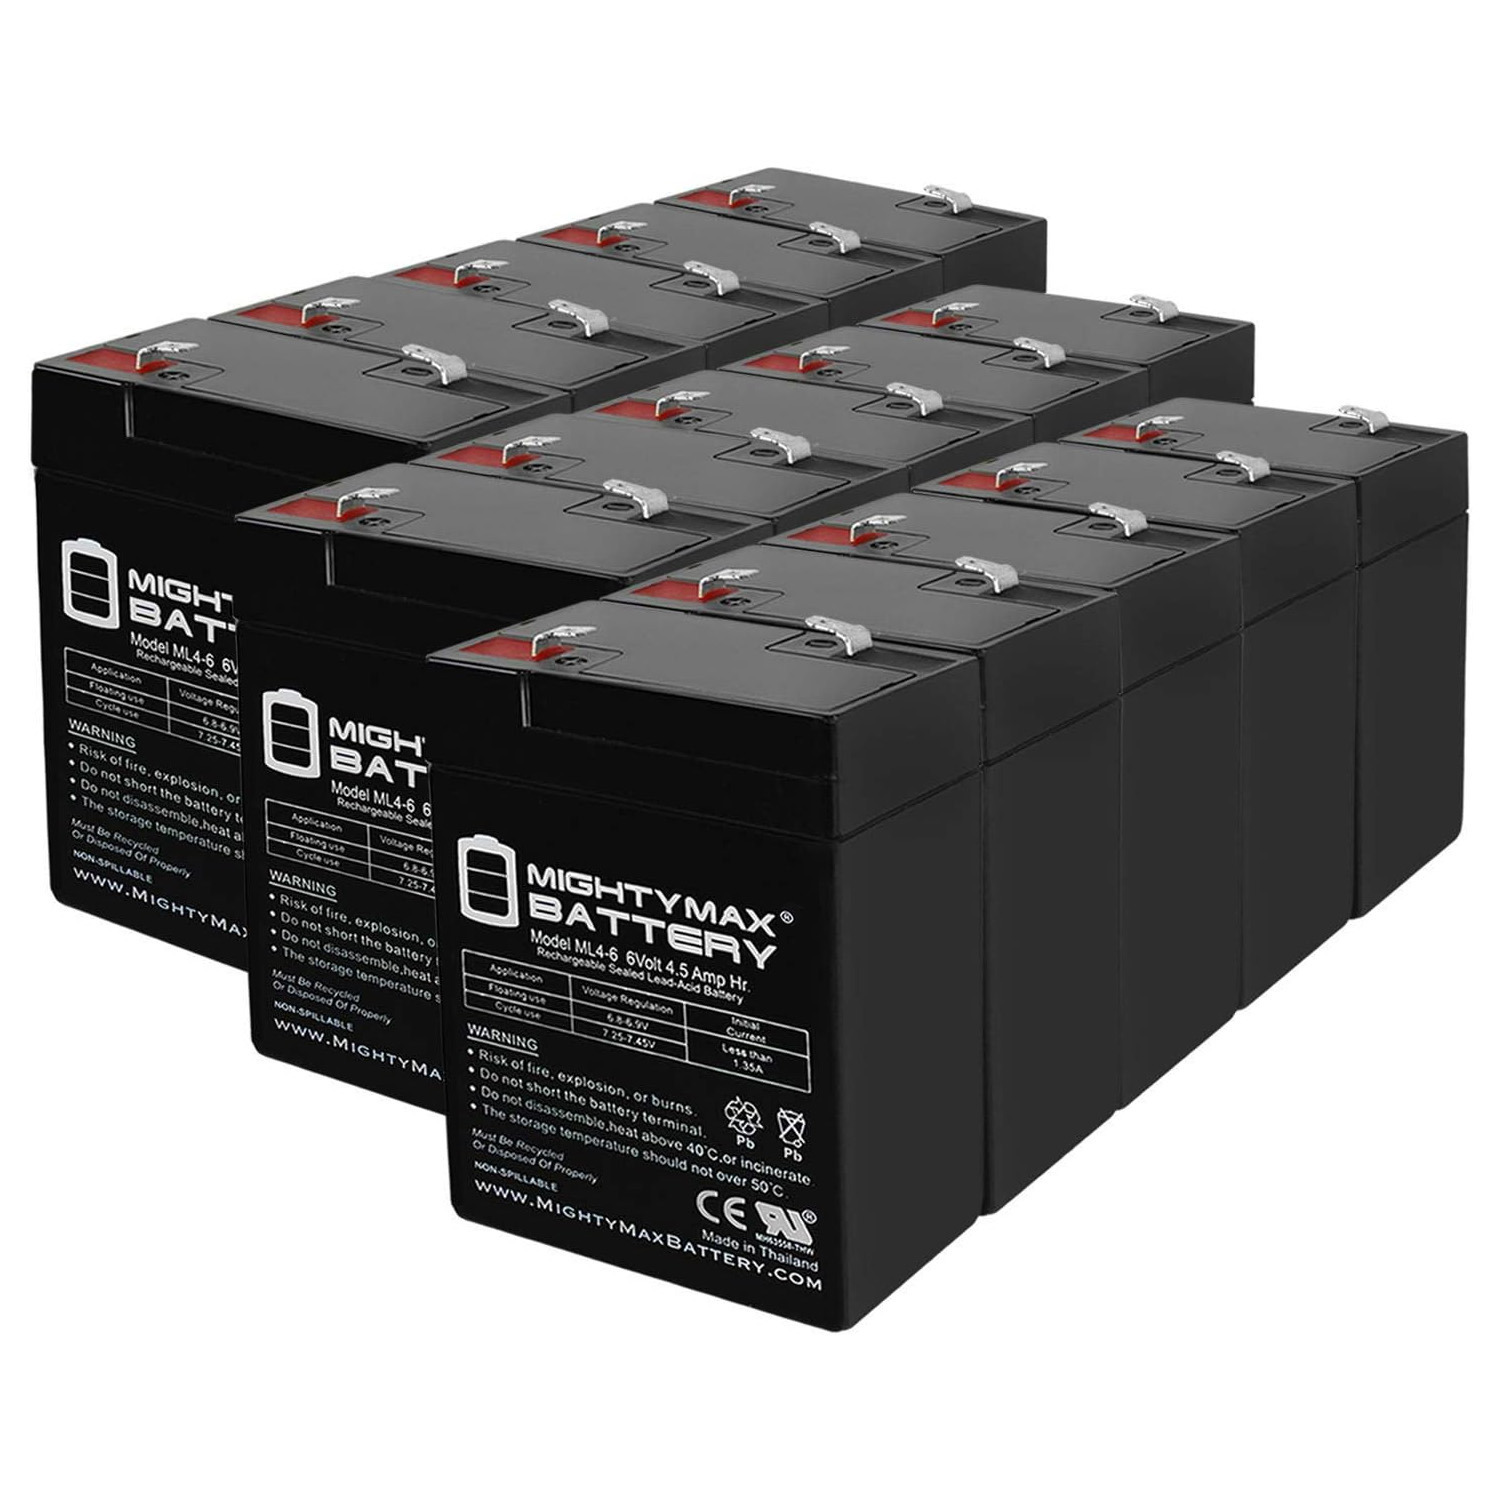 6V 4.5Ah Emergency Exit Lighting SLA Battery - 15 Pack